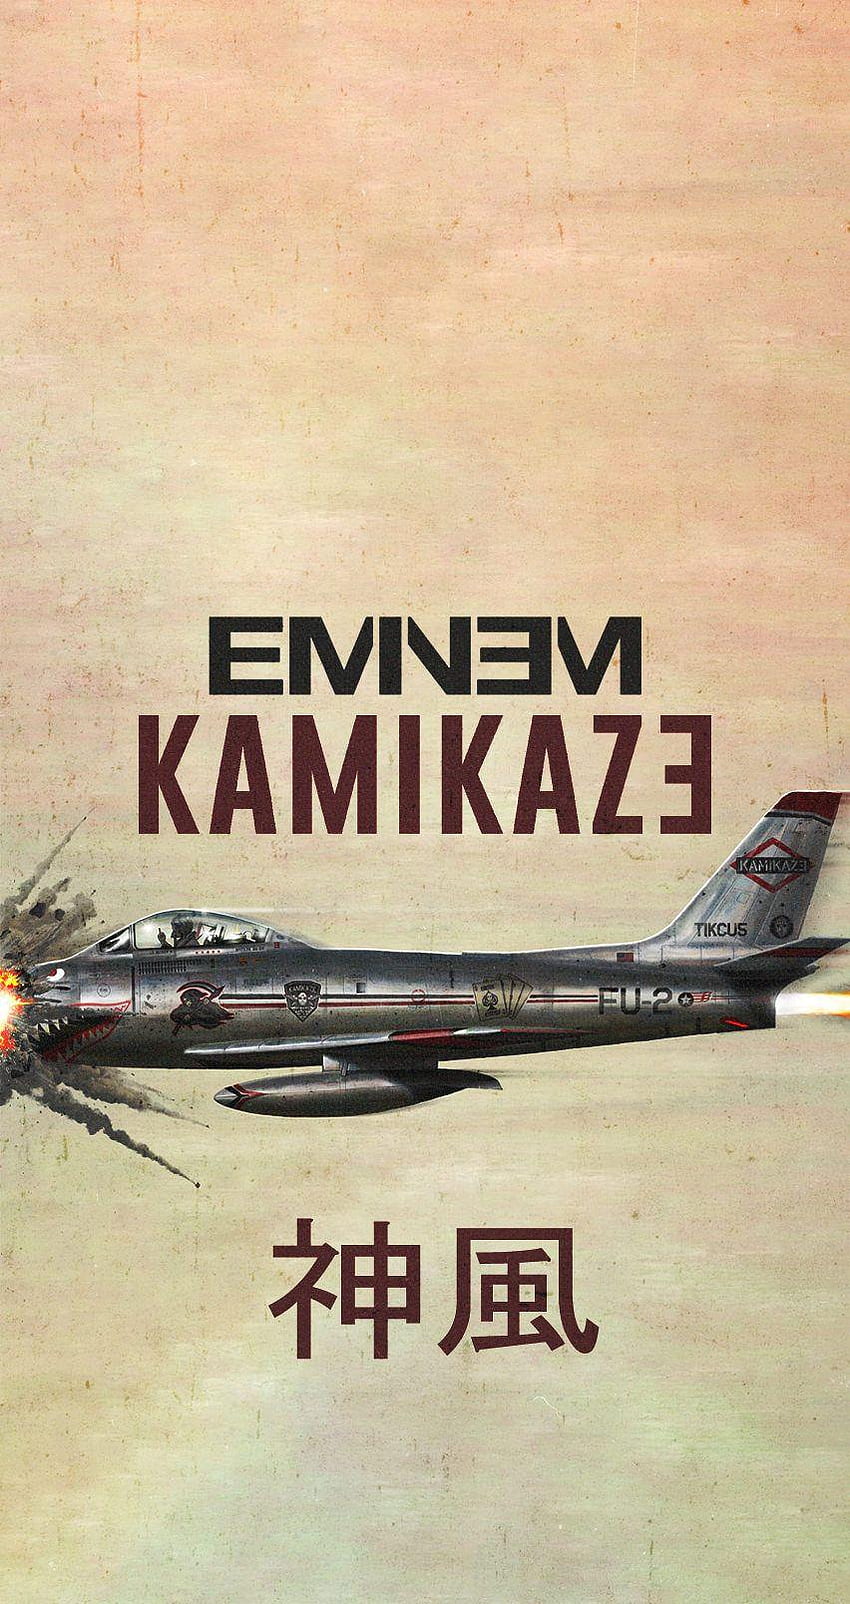 Eminem Kamikaze, Eminem Album HD phone wallpaper